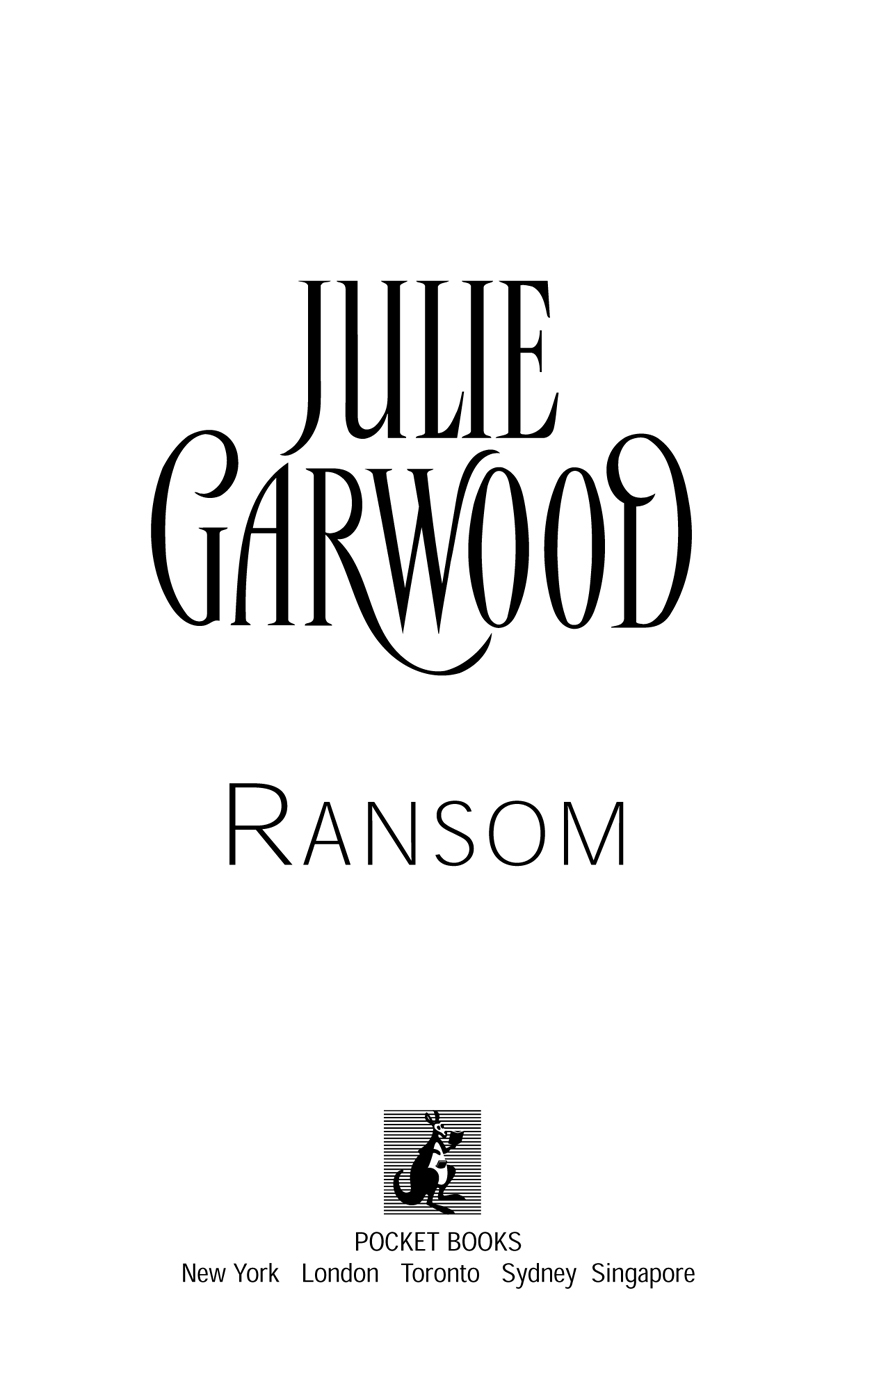 Ransom by Julie Garwood